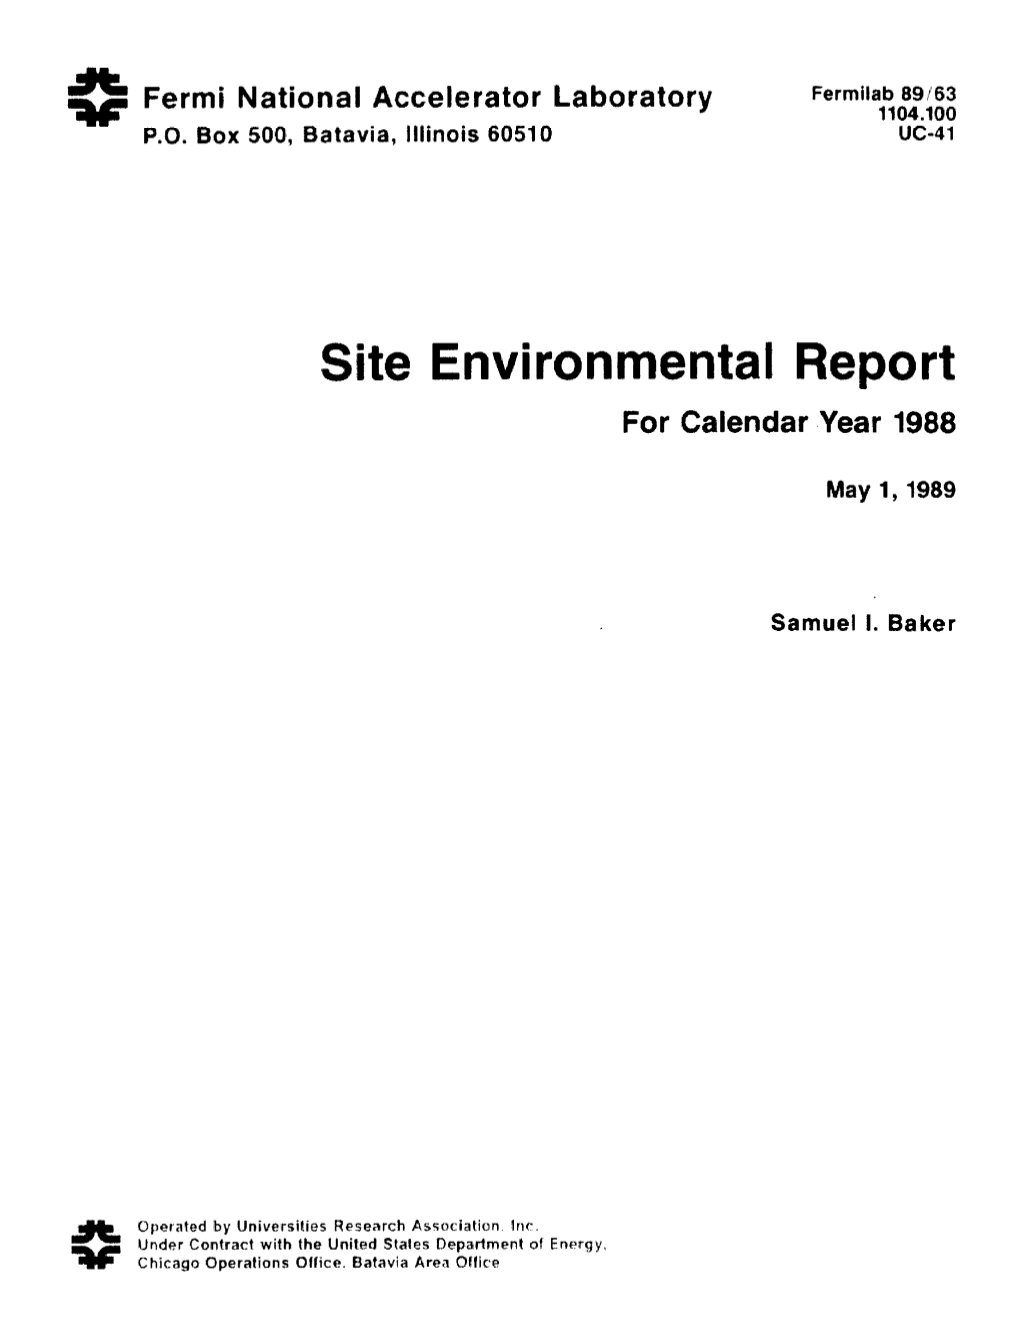 1988 Environmental Report